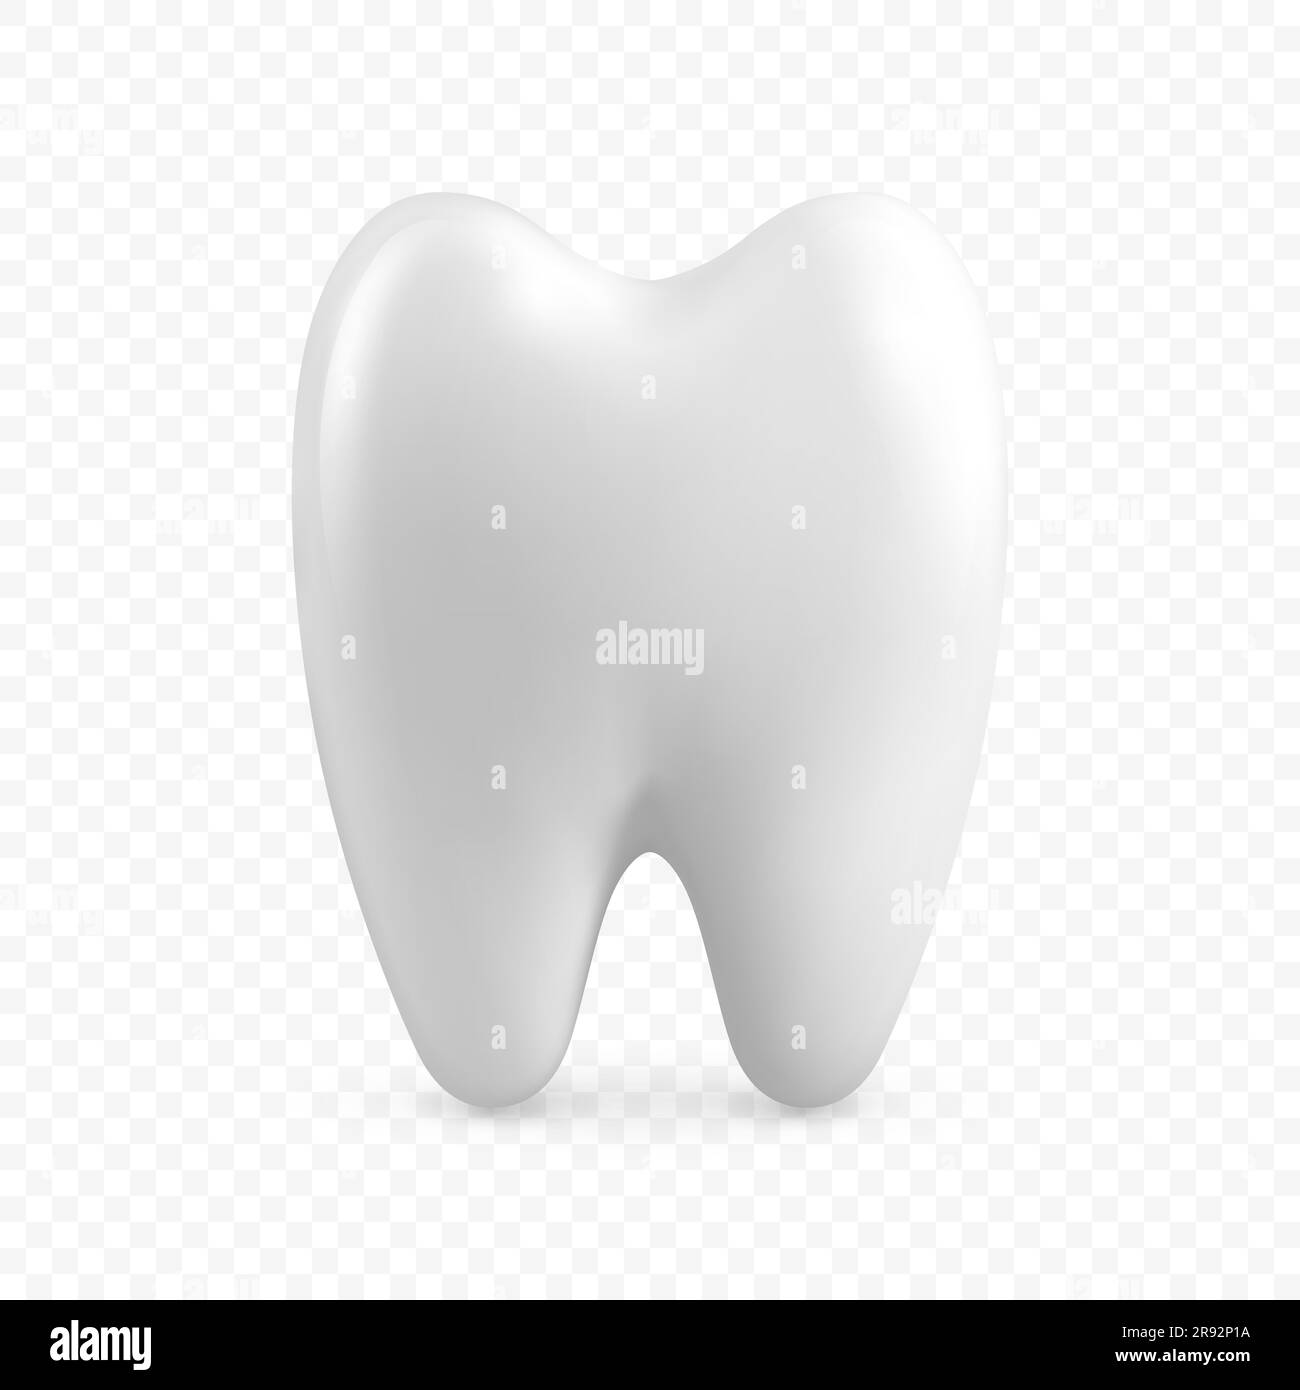 Vektor 3D realistischer Zahn. Zahnärztliche Inspektionsbanner, Plackard. Zahnsymbol Nahaufnahme Isoliert. Medical, Dentist Design Template. Zahnärztliches Gesundheitskonzept Stock Vektor